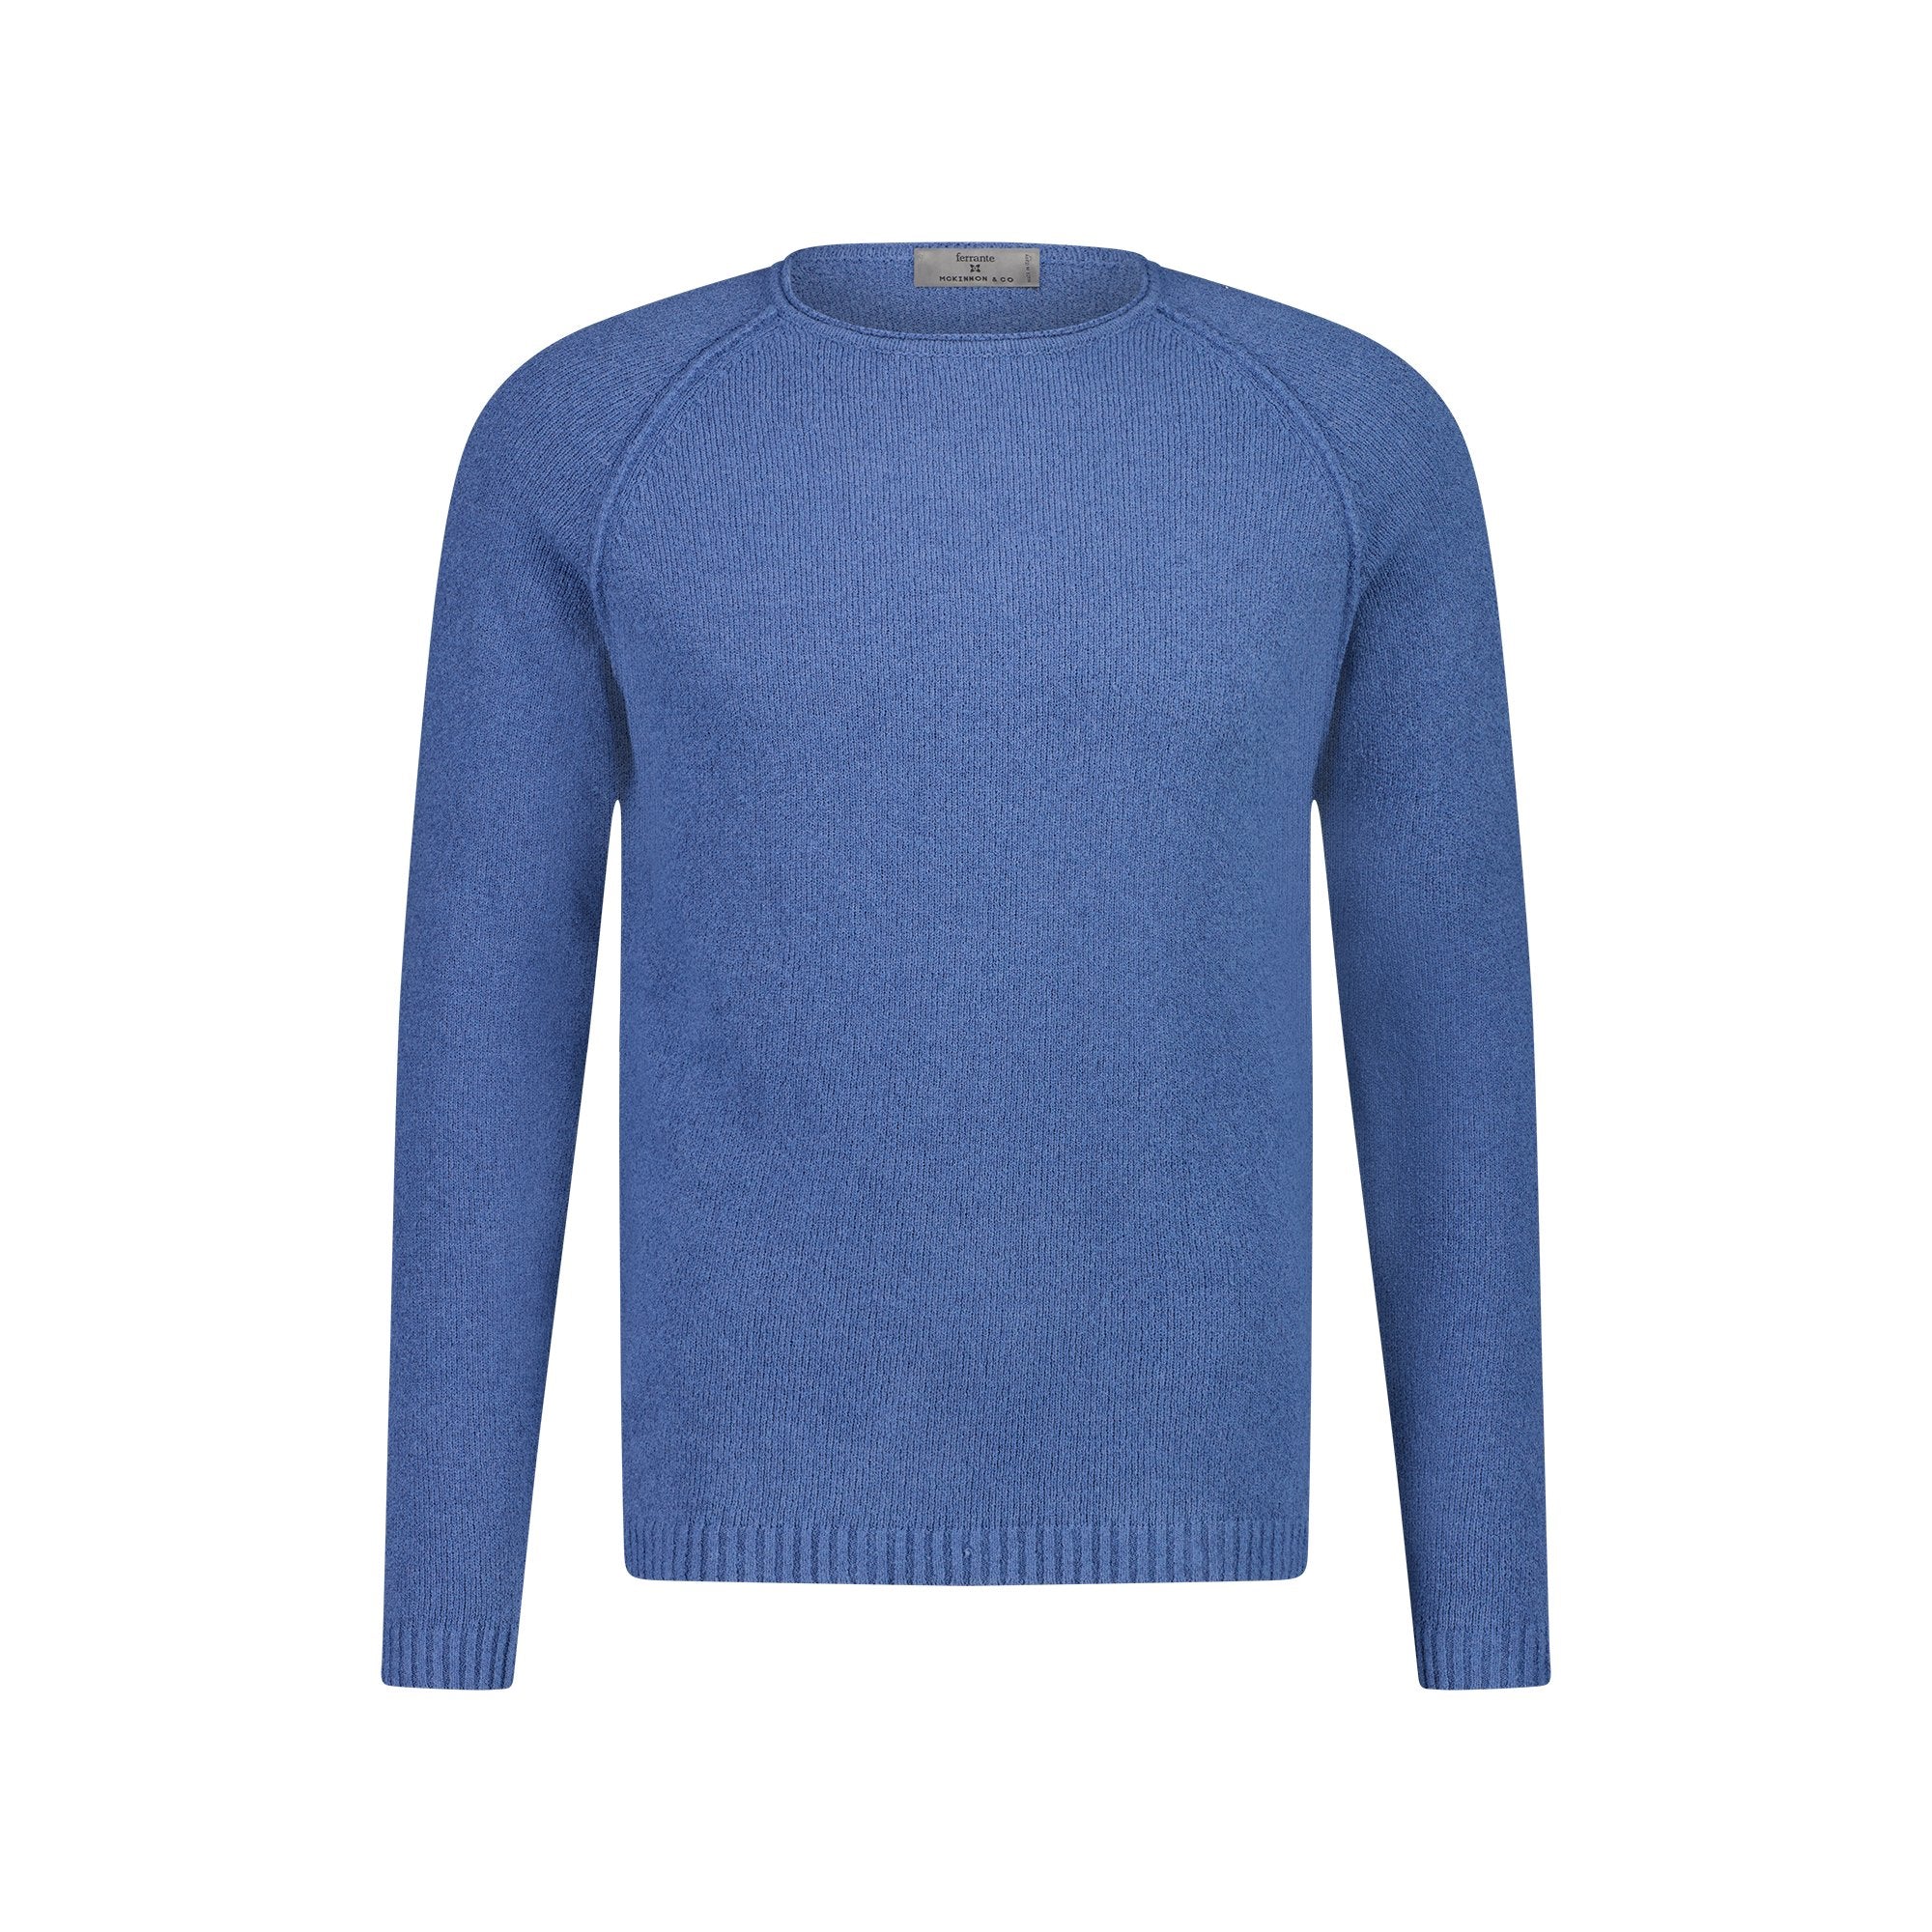 MCKINNON x FERRANTE Long Sleeve Crew Neck Sweater in MID BLUE - Henry BucksKnitwear38SS230078 - MBLU - 50